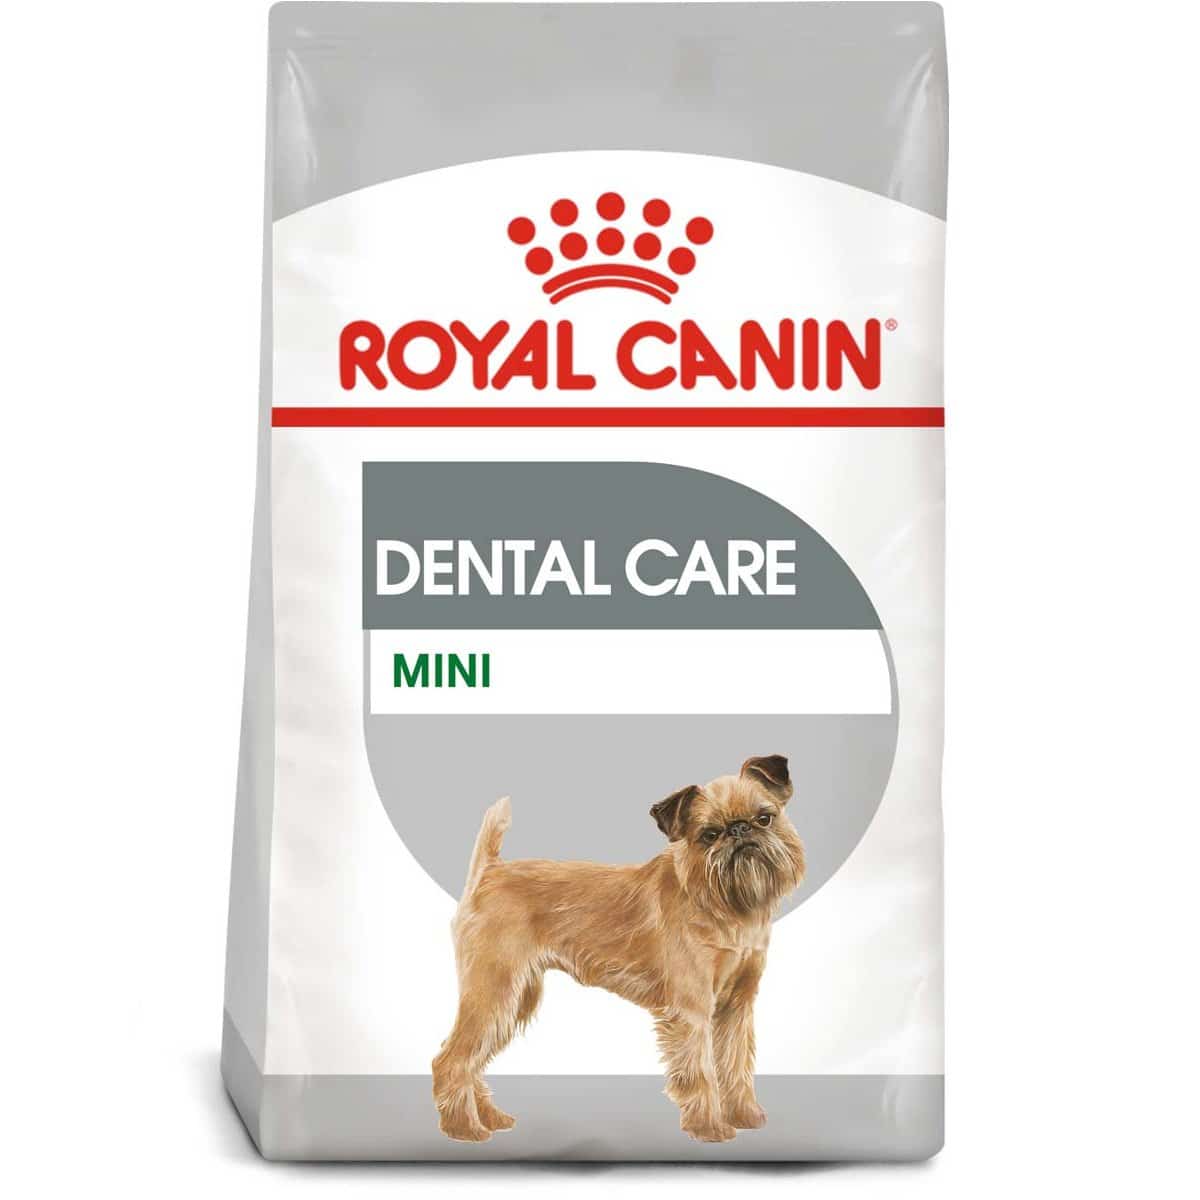 ROYAL CANIN DENTAL CARE MINI Trockenfutter für kleine Hunde mit empfindlichen Zähnen 3kg